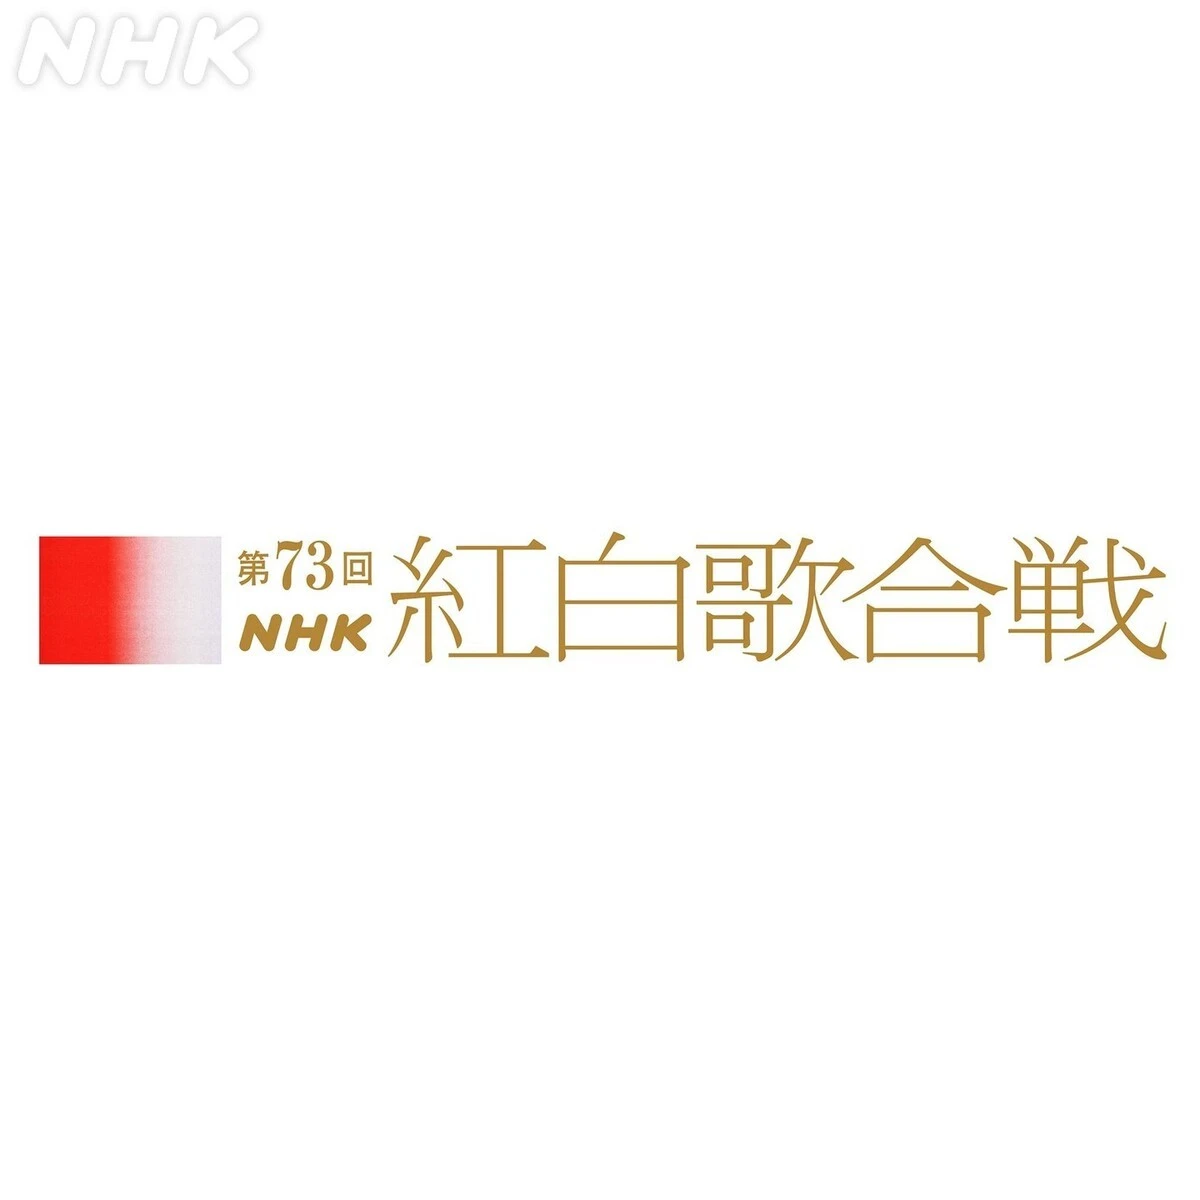 12月31日にNHK総合ほかで放送される『第73回NHK紅白歌合戦』／画像は<a href="https://www.instagram.com/p/CjXPniLNZXB/" target="_blank">公式Instagram</a>から